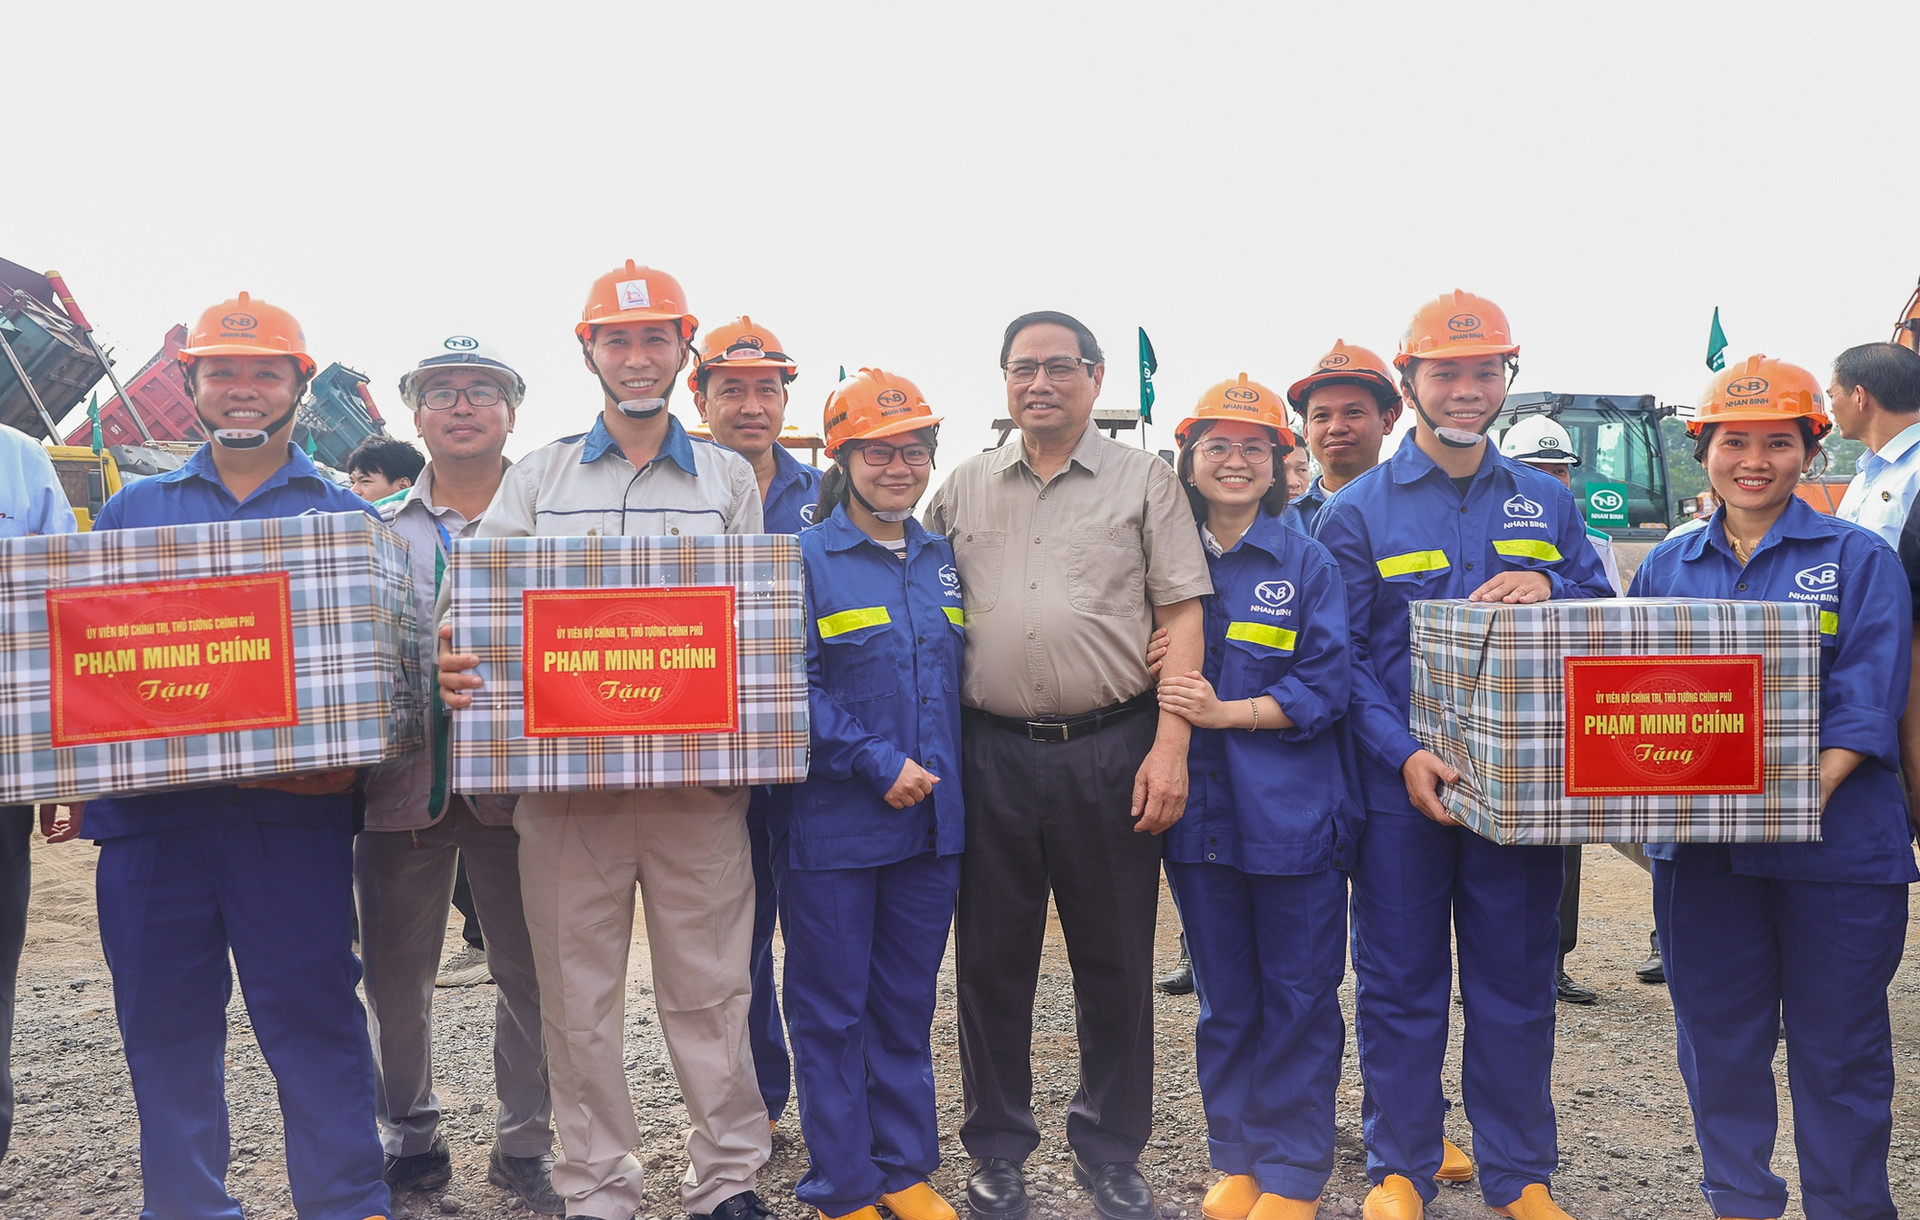 Thủ tướng dự lễ khởi công 3 tuyến đường có ý nghĩa lớn với Bắc Ninh và Hà Nội - Ảnh 4.